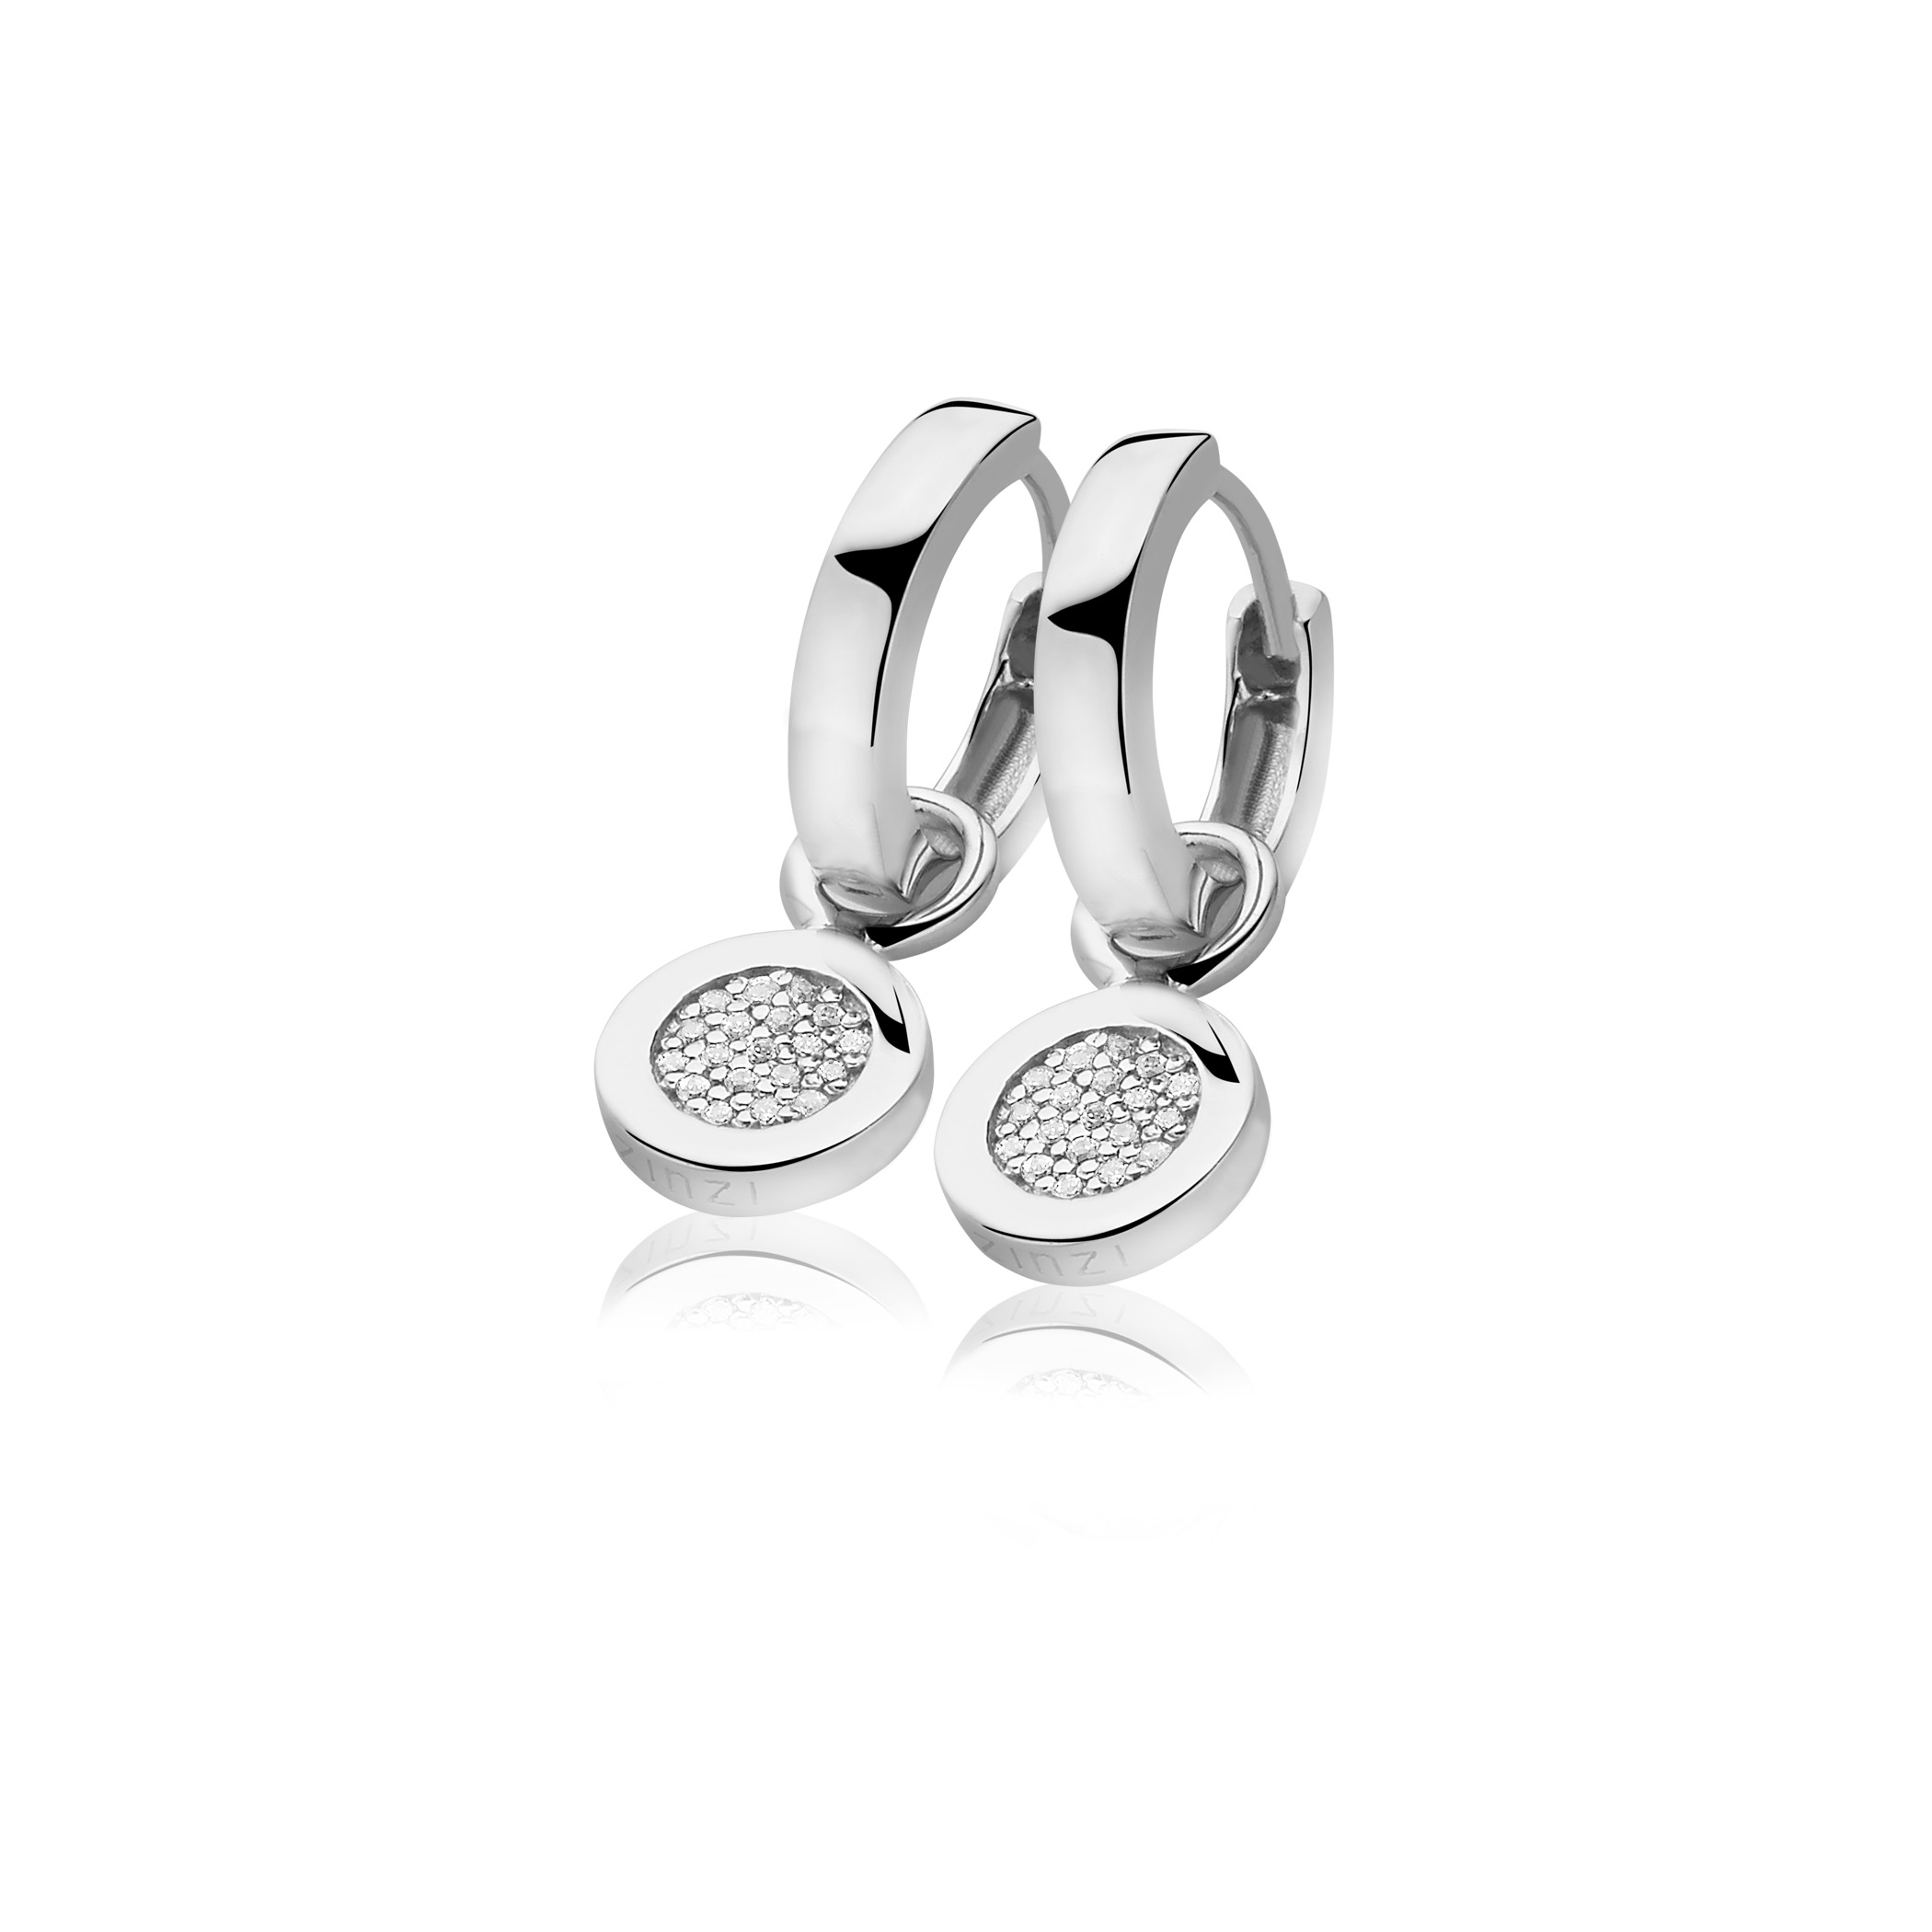 ZINZI Sterling Silver Earrings Pendants White ZICH1059 (excl. hoop earrings)